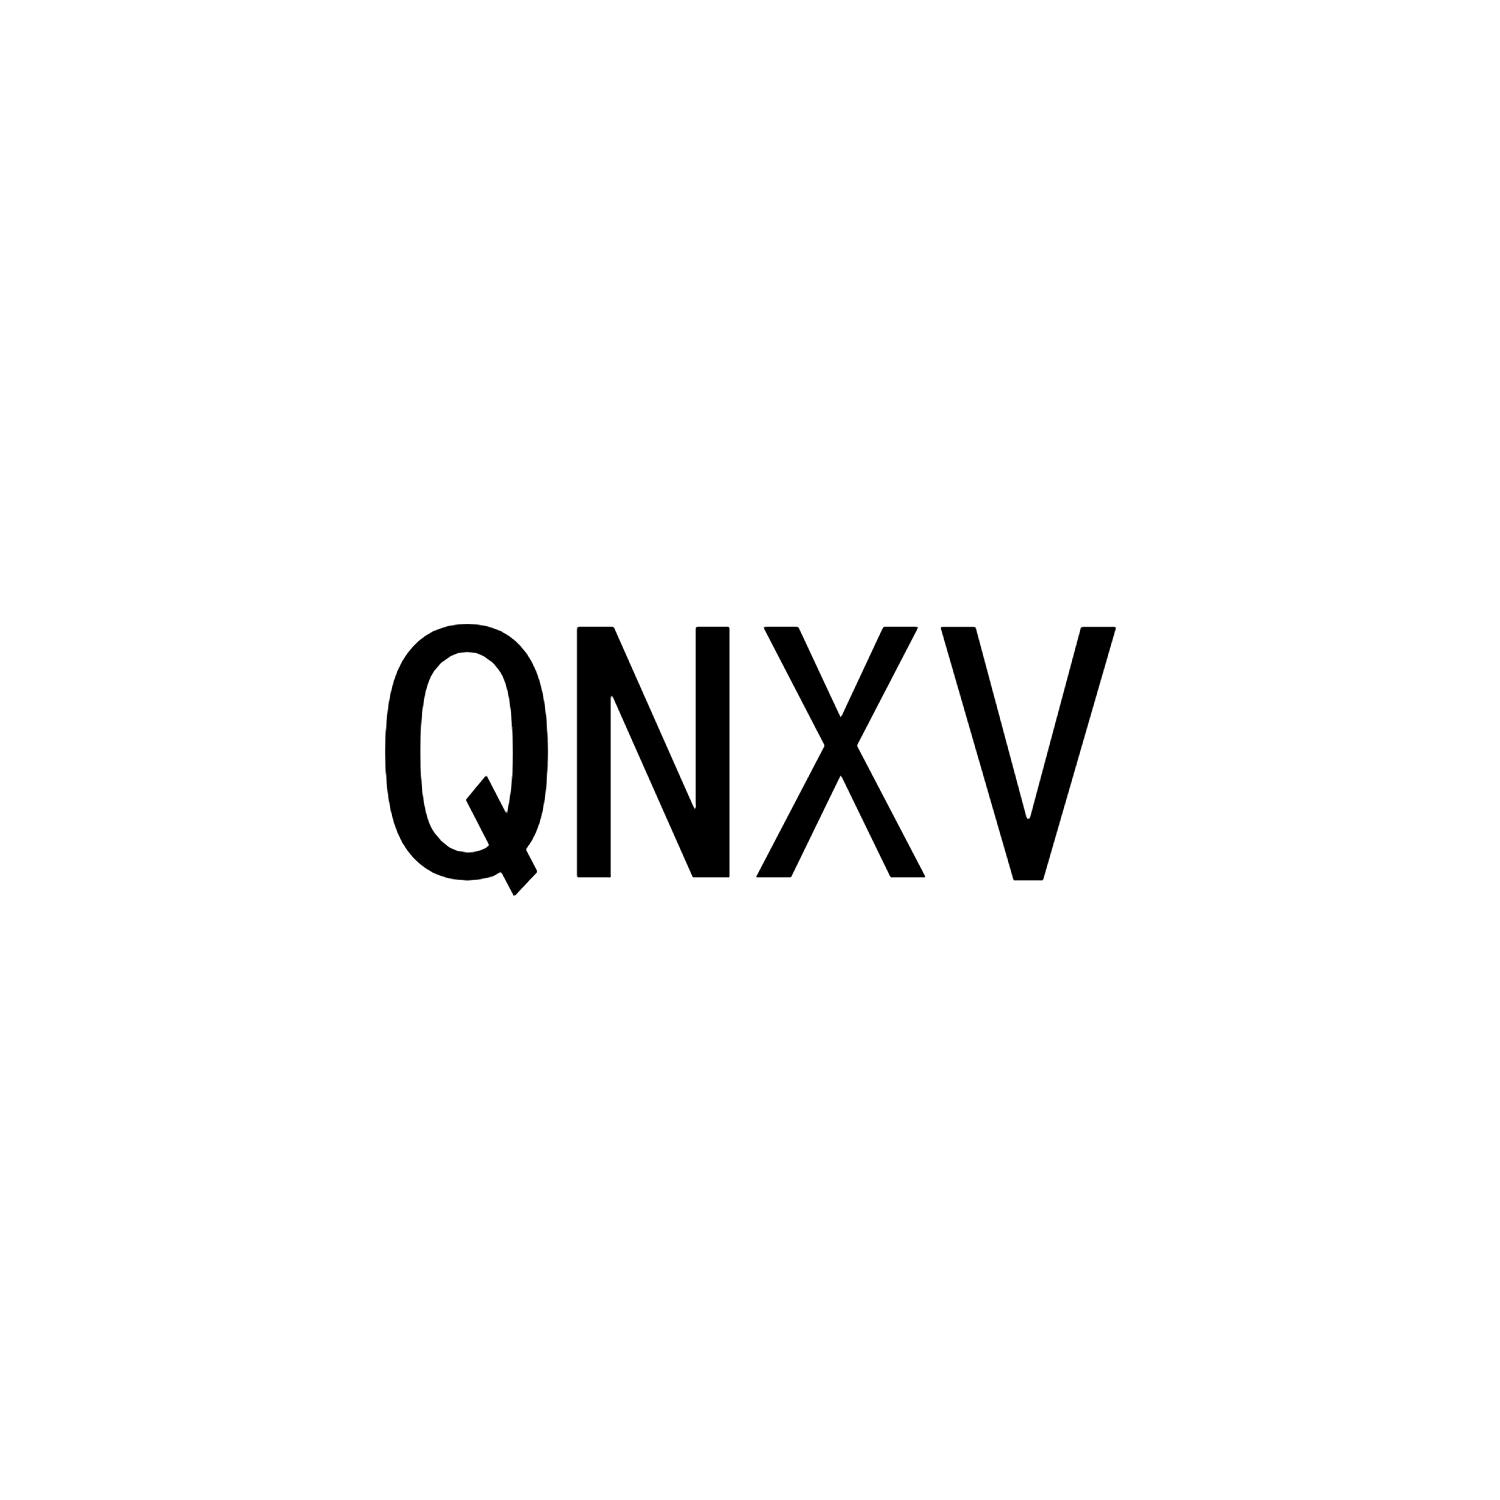 QNXV